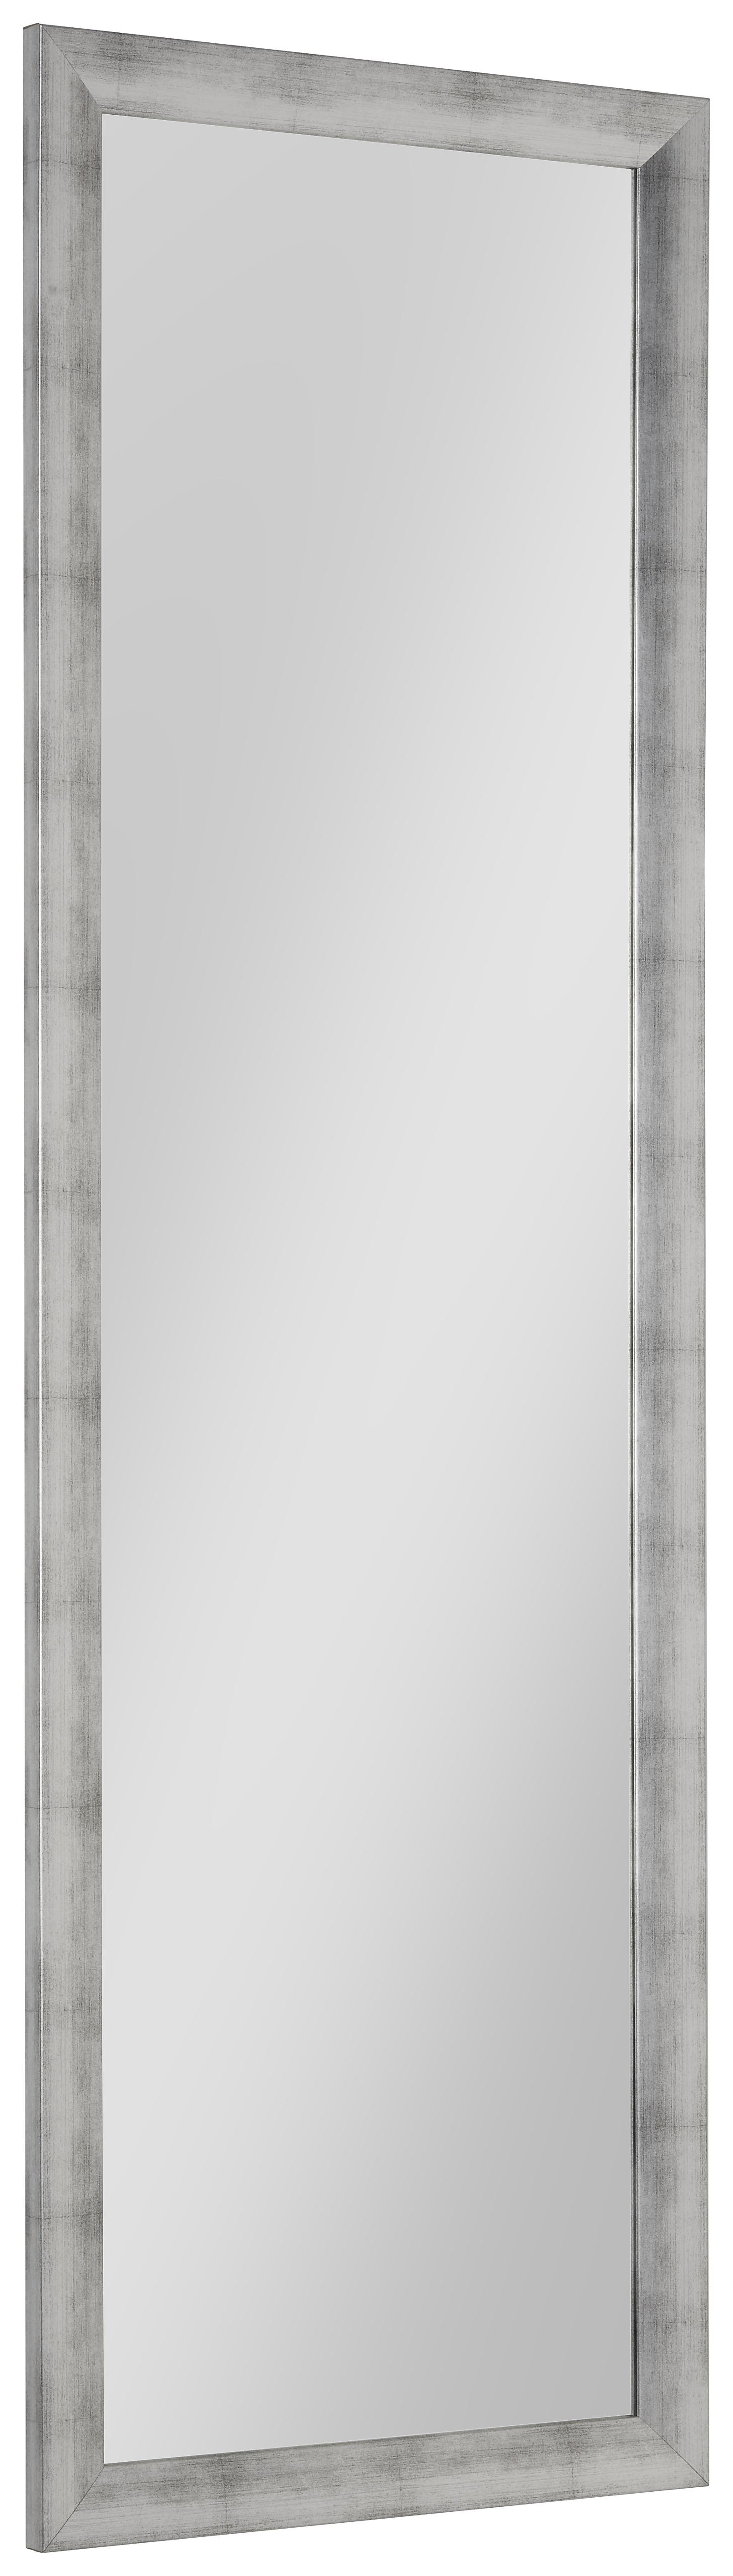 Ogledalo Zidno Orsay - srebrne boje, Lifestyle, staklo/drvni materijal (50/160cm) - Modern Living